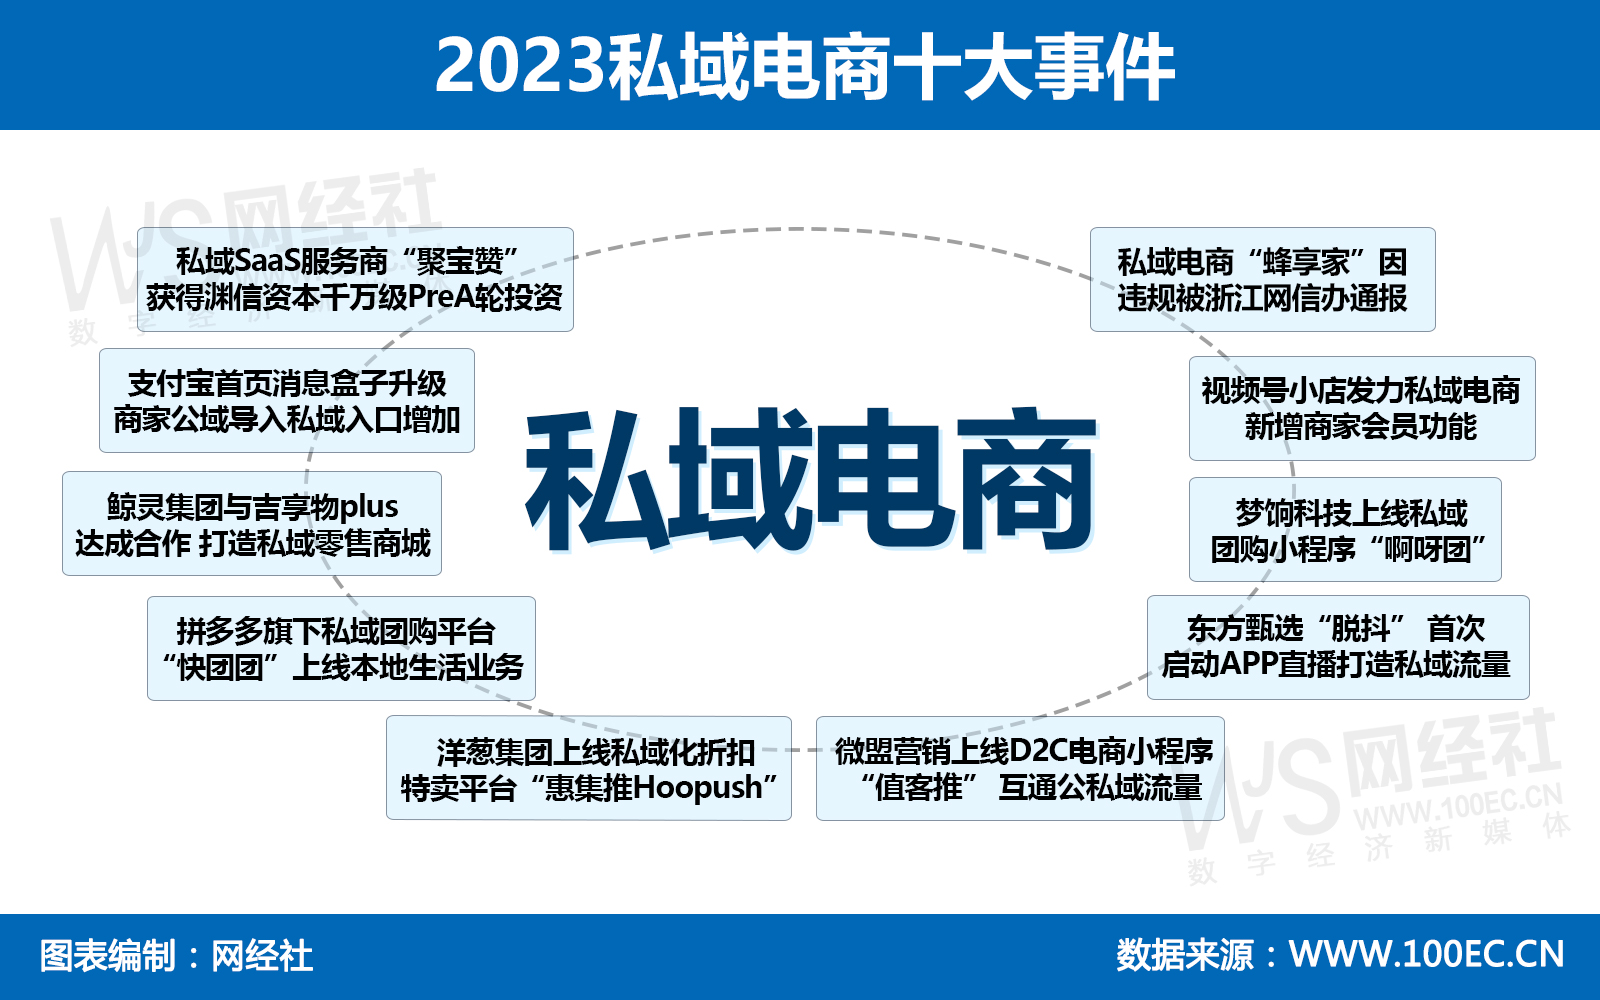 2023私域电商十大事件.jpg